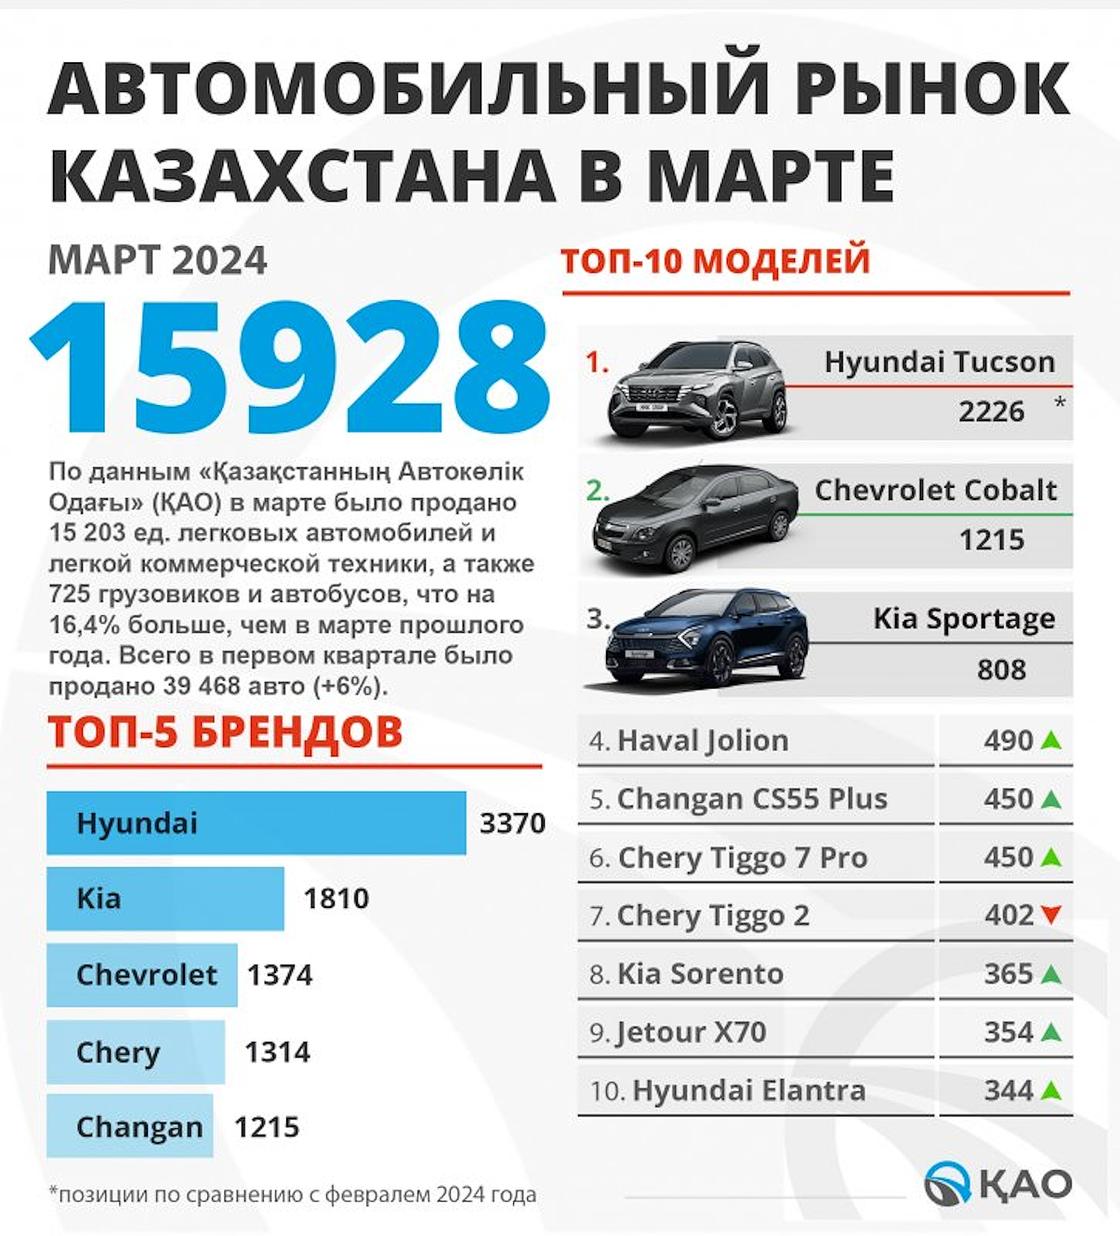 Продажи новых авто в Казахстане